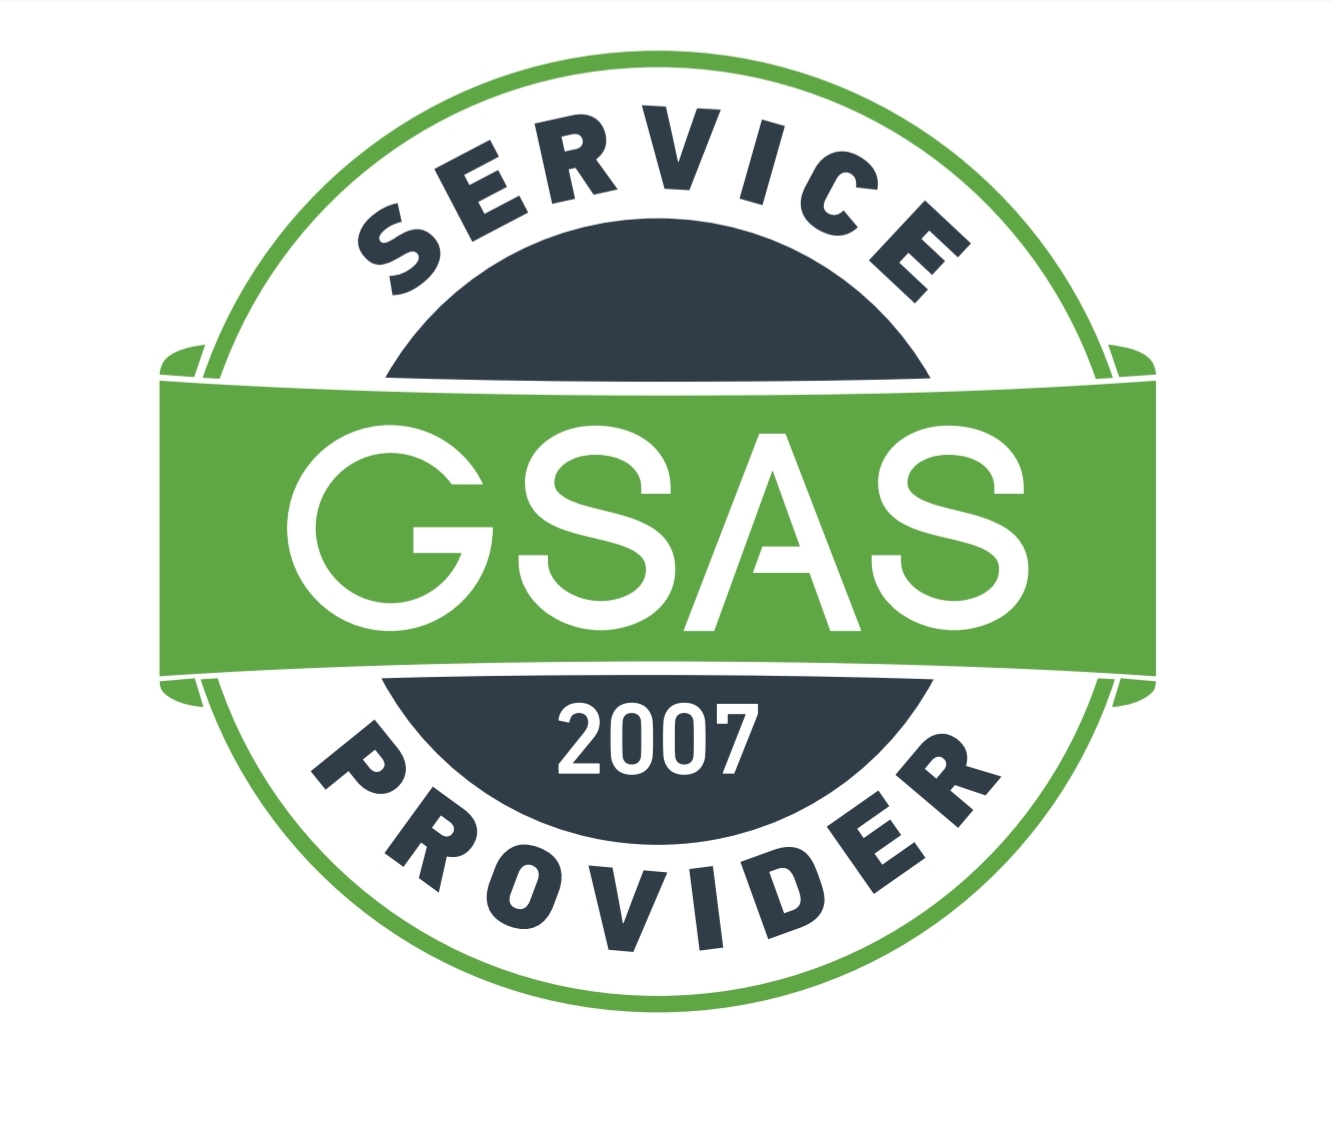 GSASA DESIGN & BUILD SERVICE PROVIDER